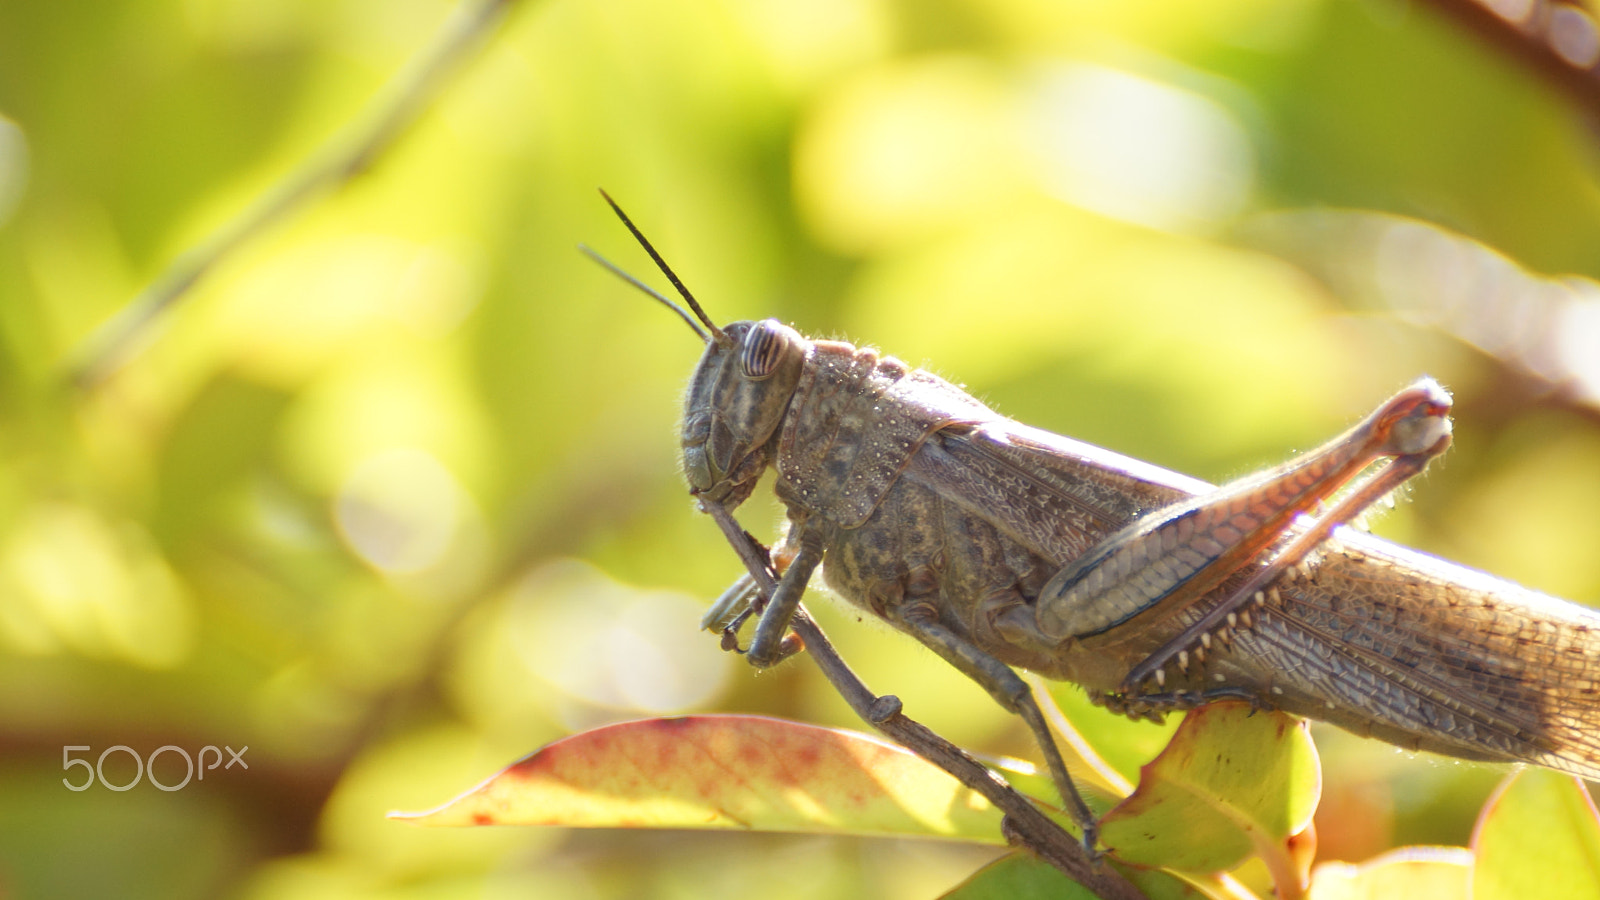 Sony SLT-A77 sample photo. The locust photography